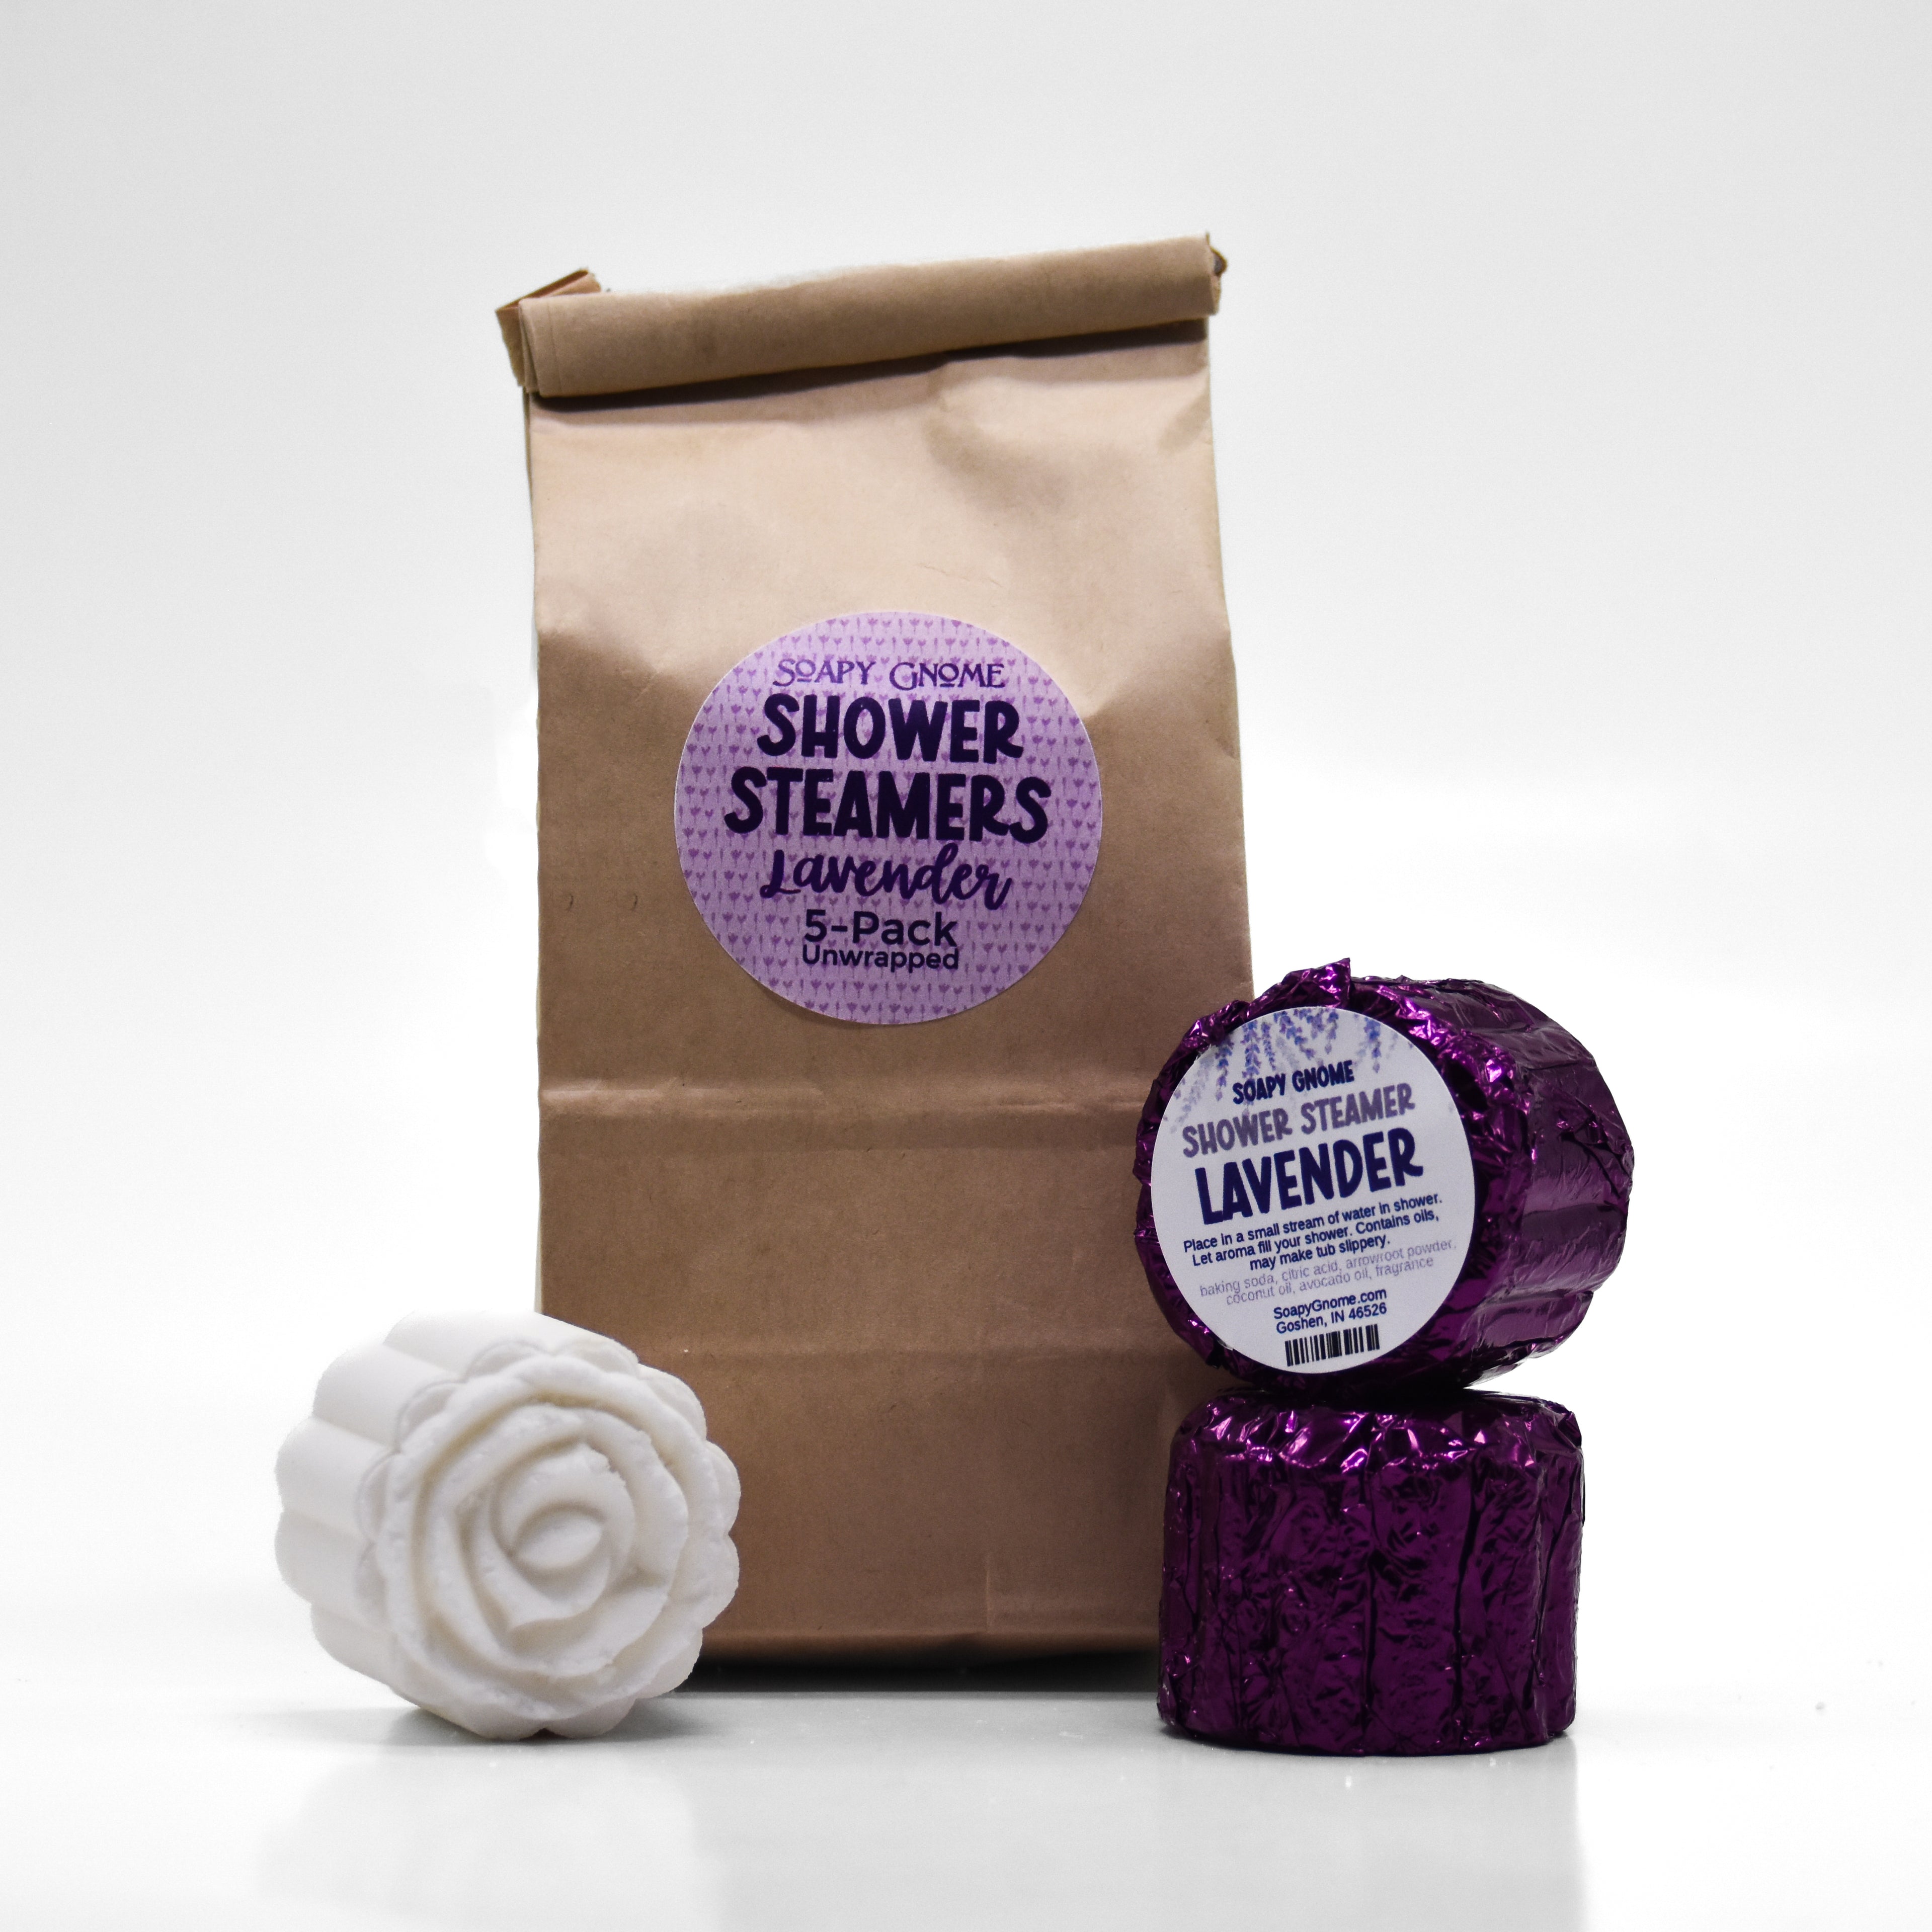 5-Pack Lavender Shower Steamers Set of 6